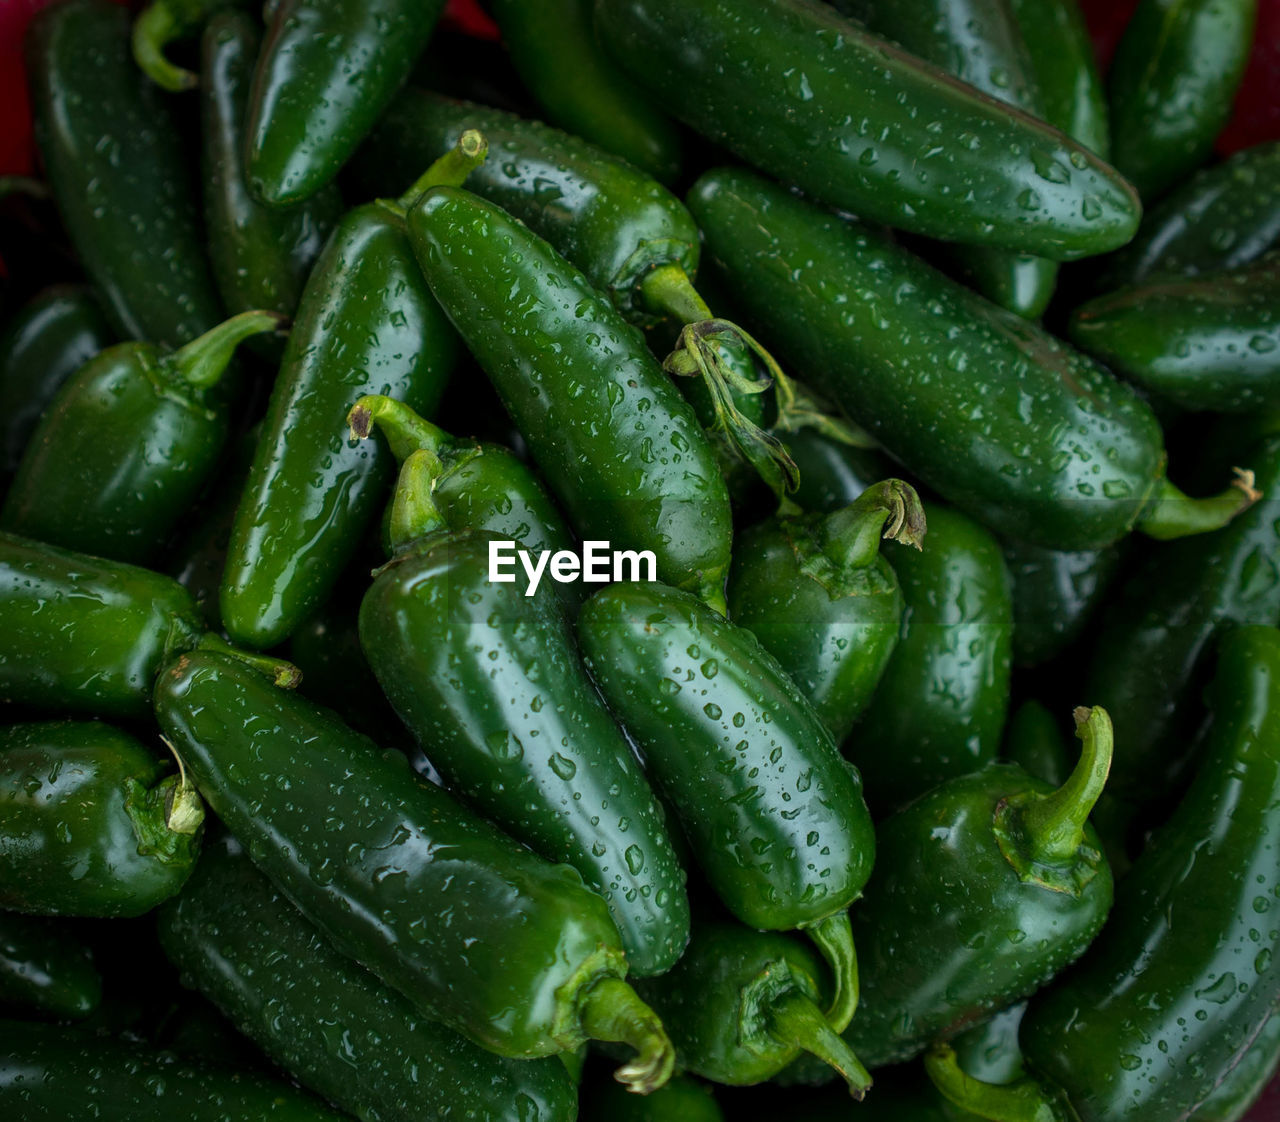 Full frame shot of wet green chili peppers